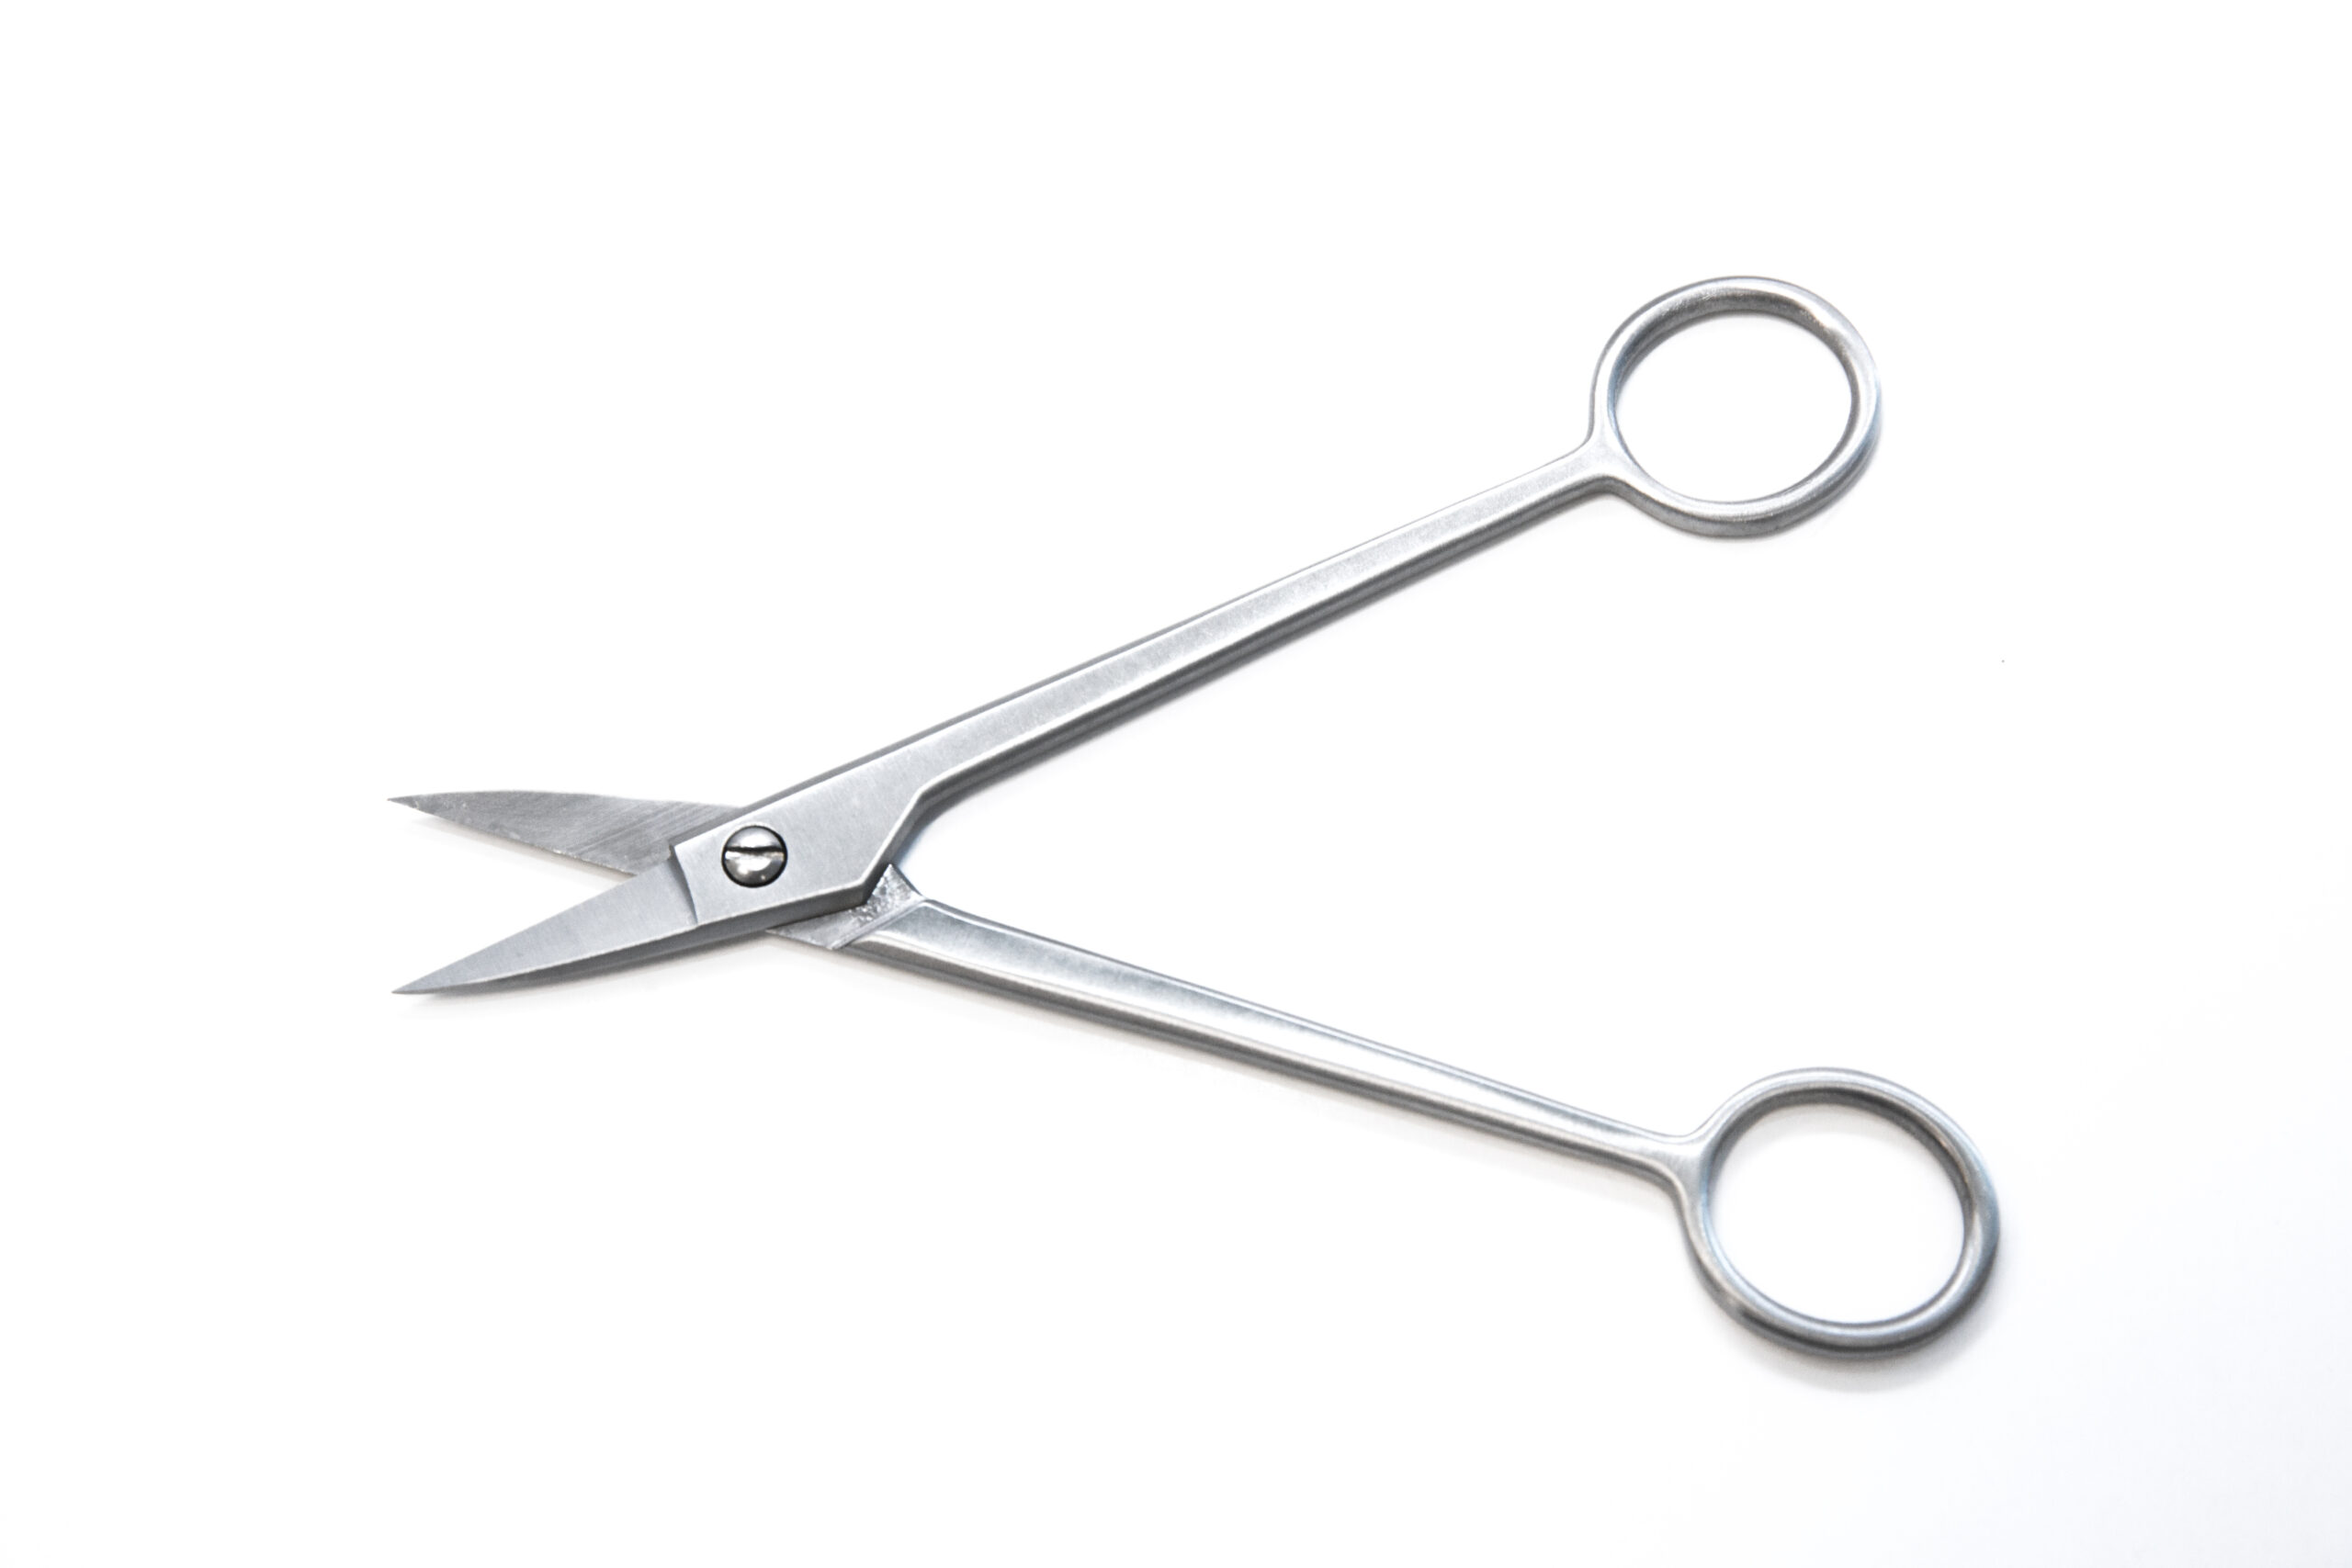 Bud Trimming Scissors